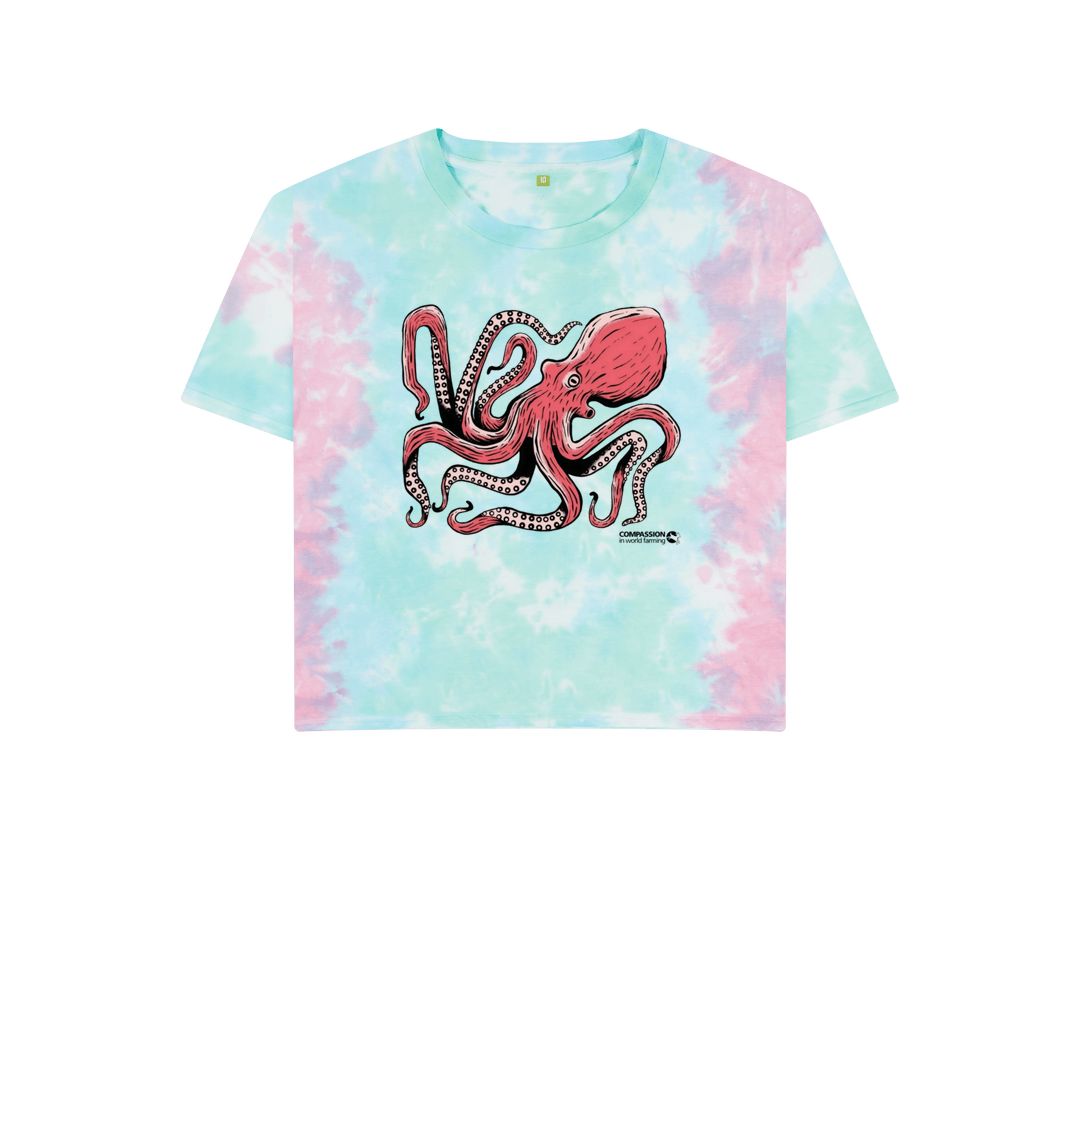 Pastel Tie Dye Women's Octopus Boxy T-Shirt